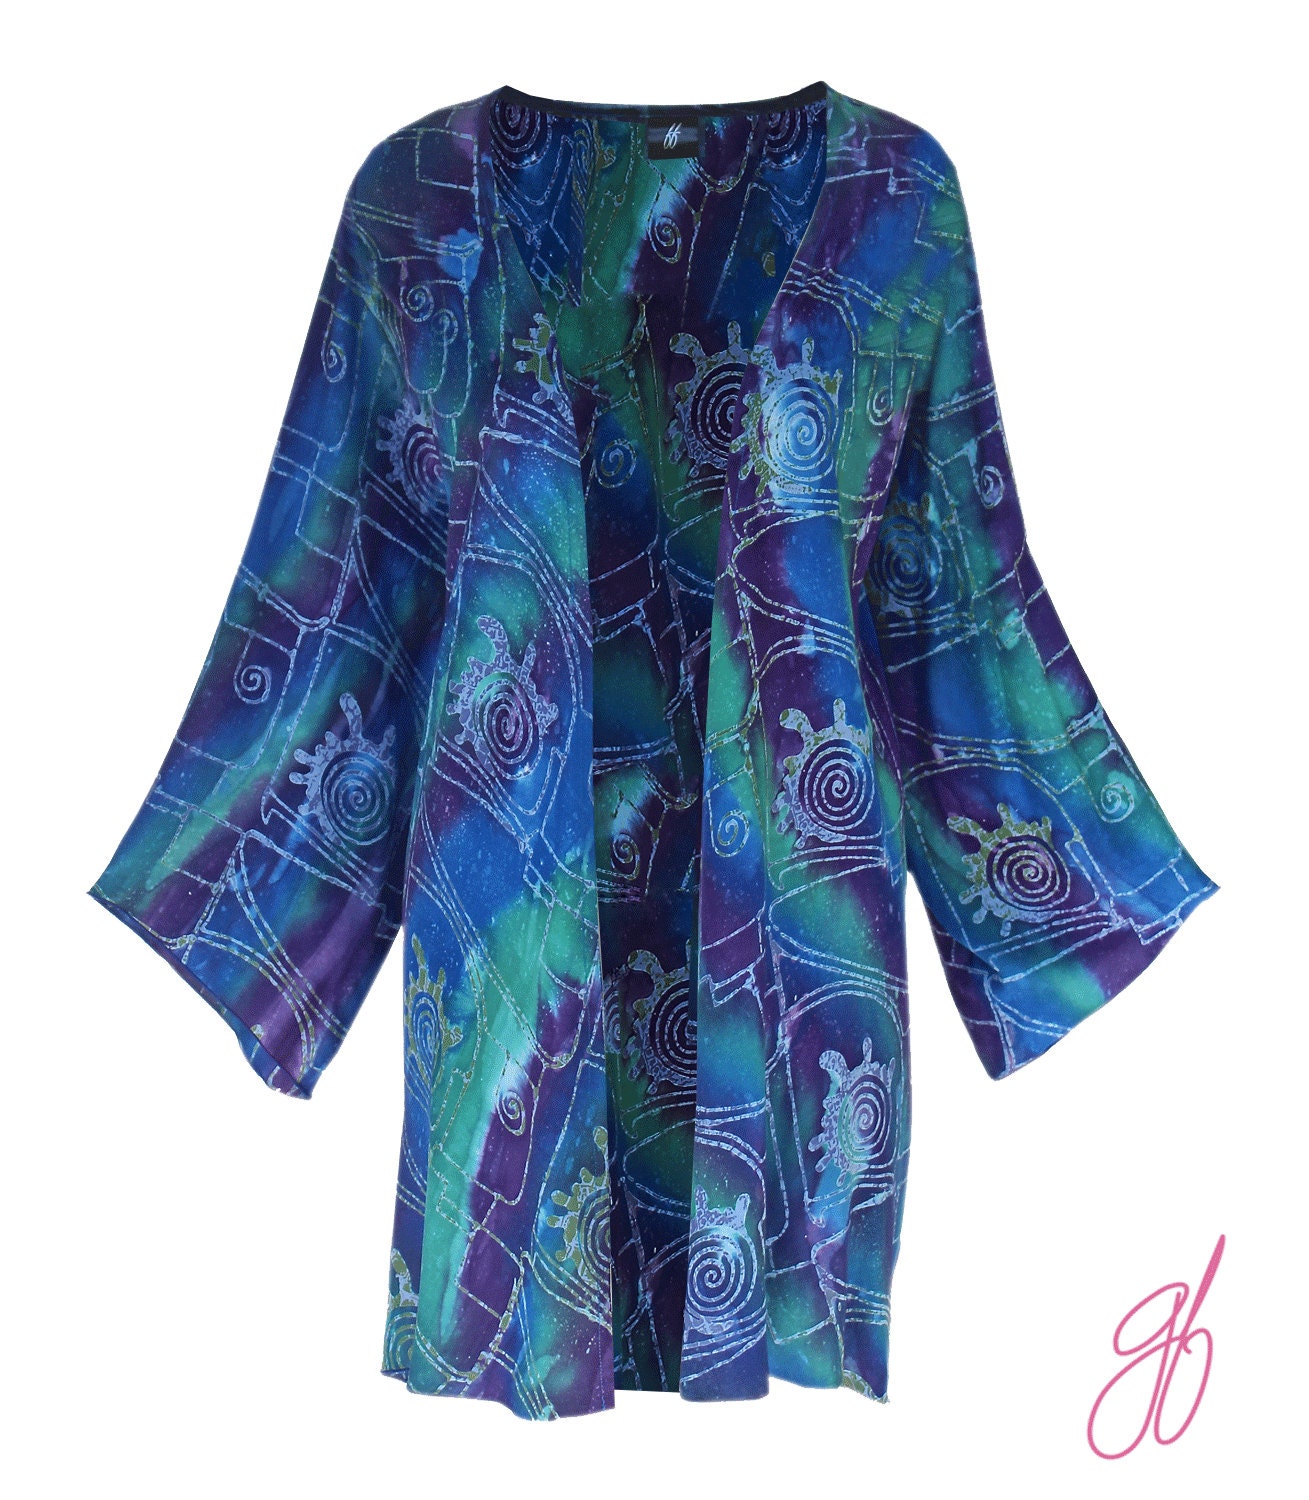 Plus Size Batik Kimono Jacket Women s by GenerousFashions 